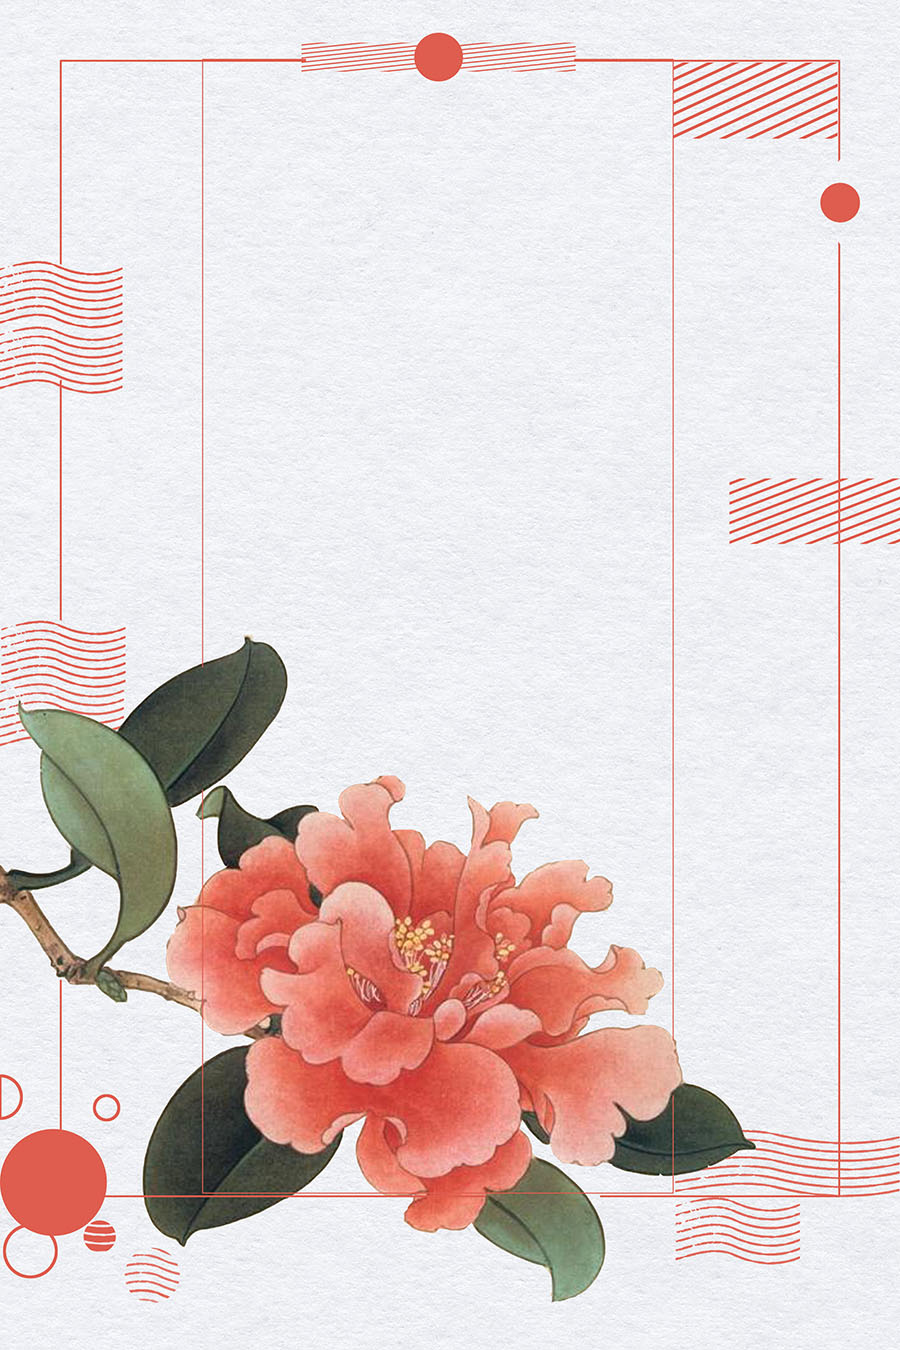 中国复古风水墨工笔画PSD背景模板，古典花草、鸟类等PS素材